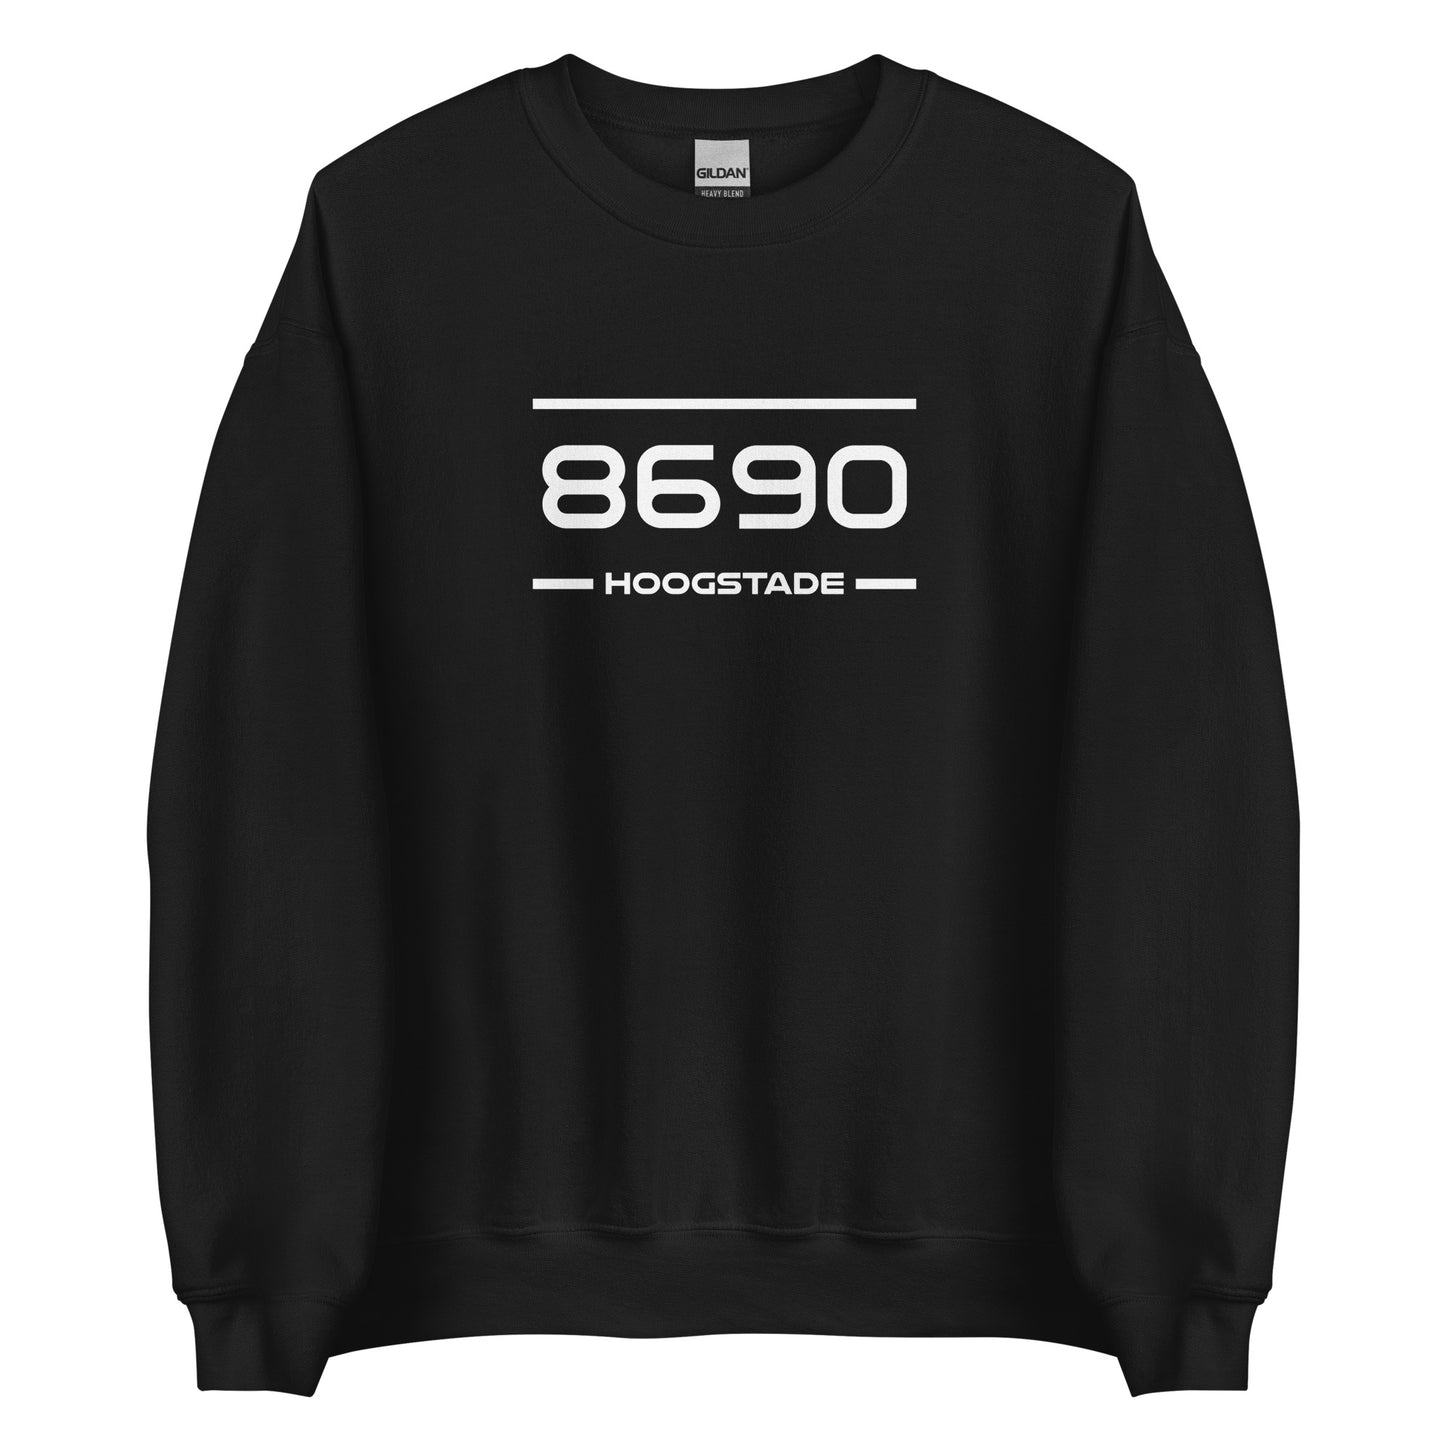 Sweater - 8690 - Hoogstade (M/V)